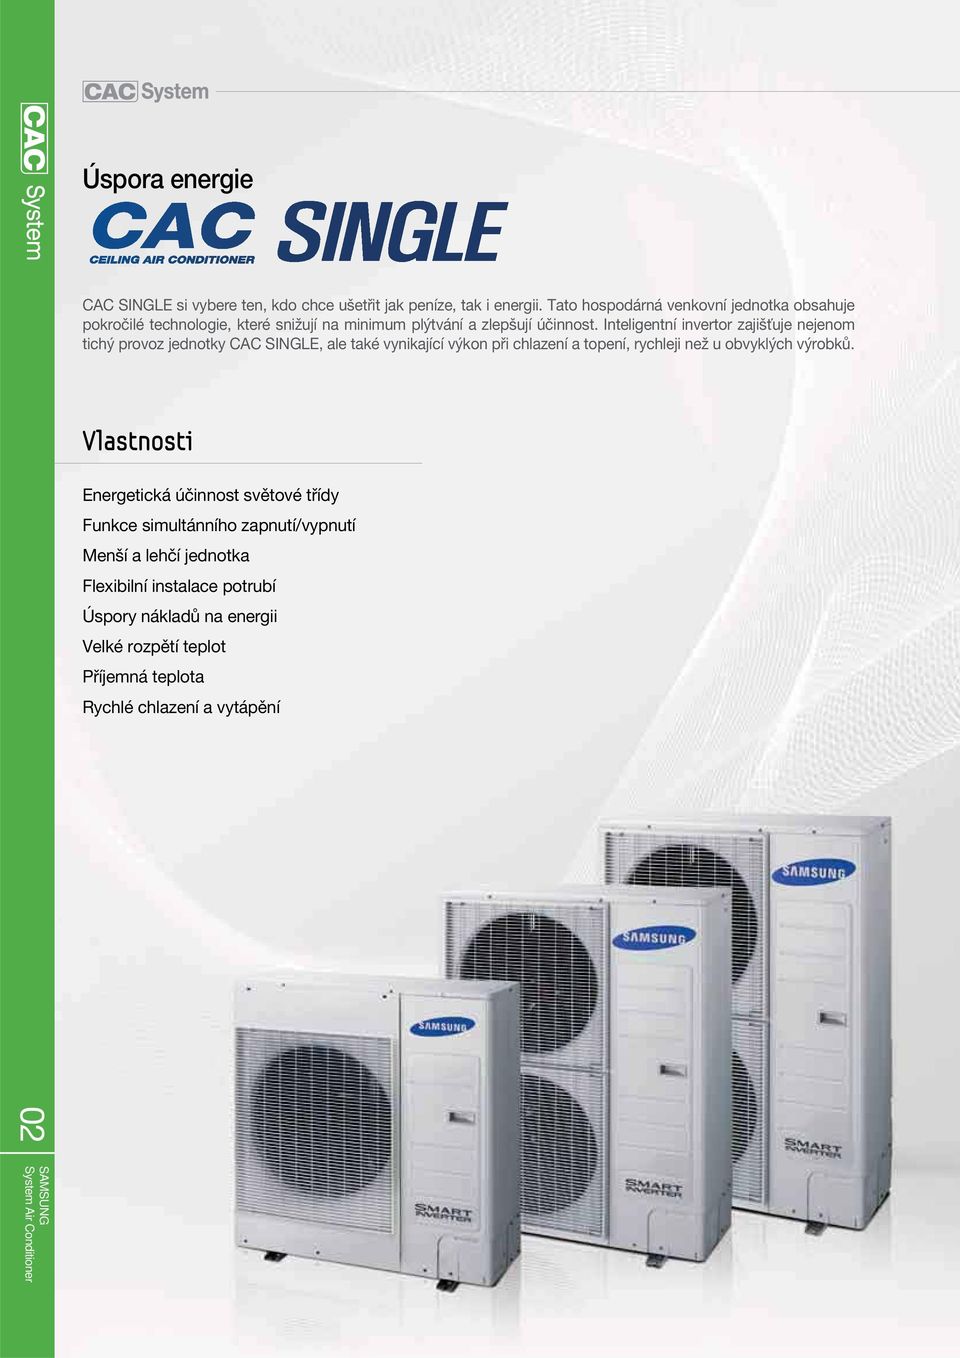 Inteligentní invertor zajišťuje nejenom tichý provoz jednotky CAC SINGLE, ale také vynikající výkon při chlazení a topení, rychleji než u obvyklých